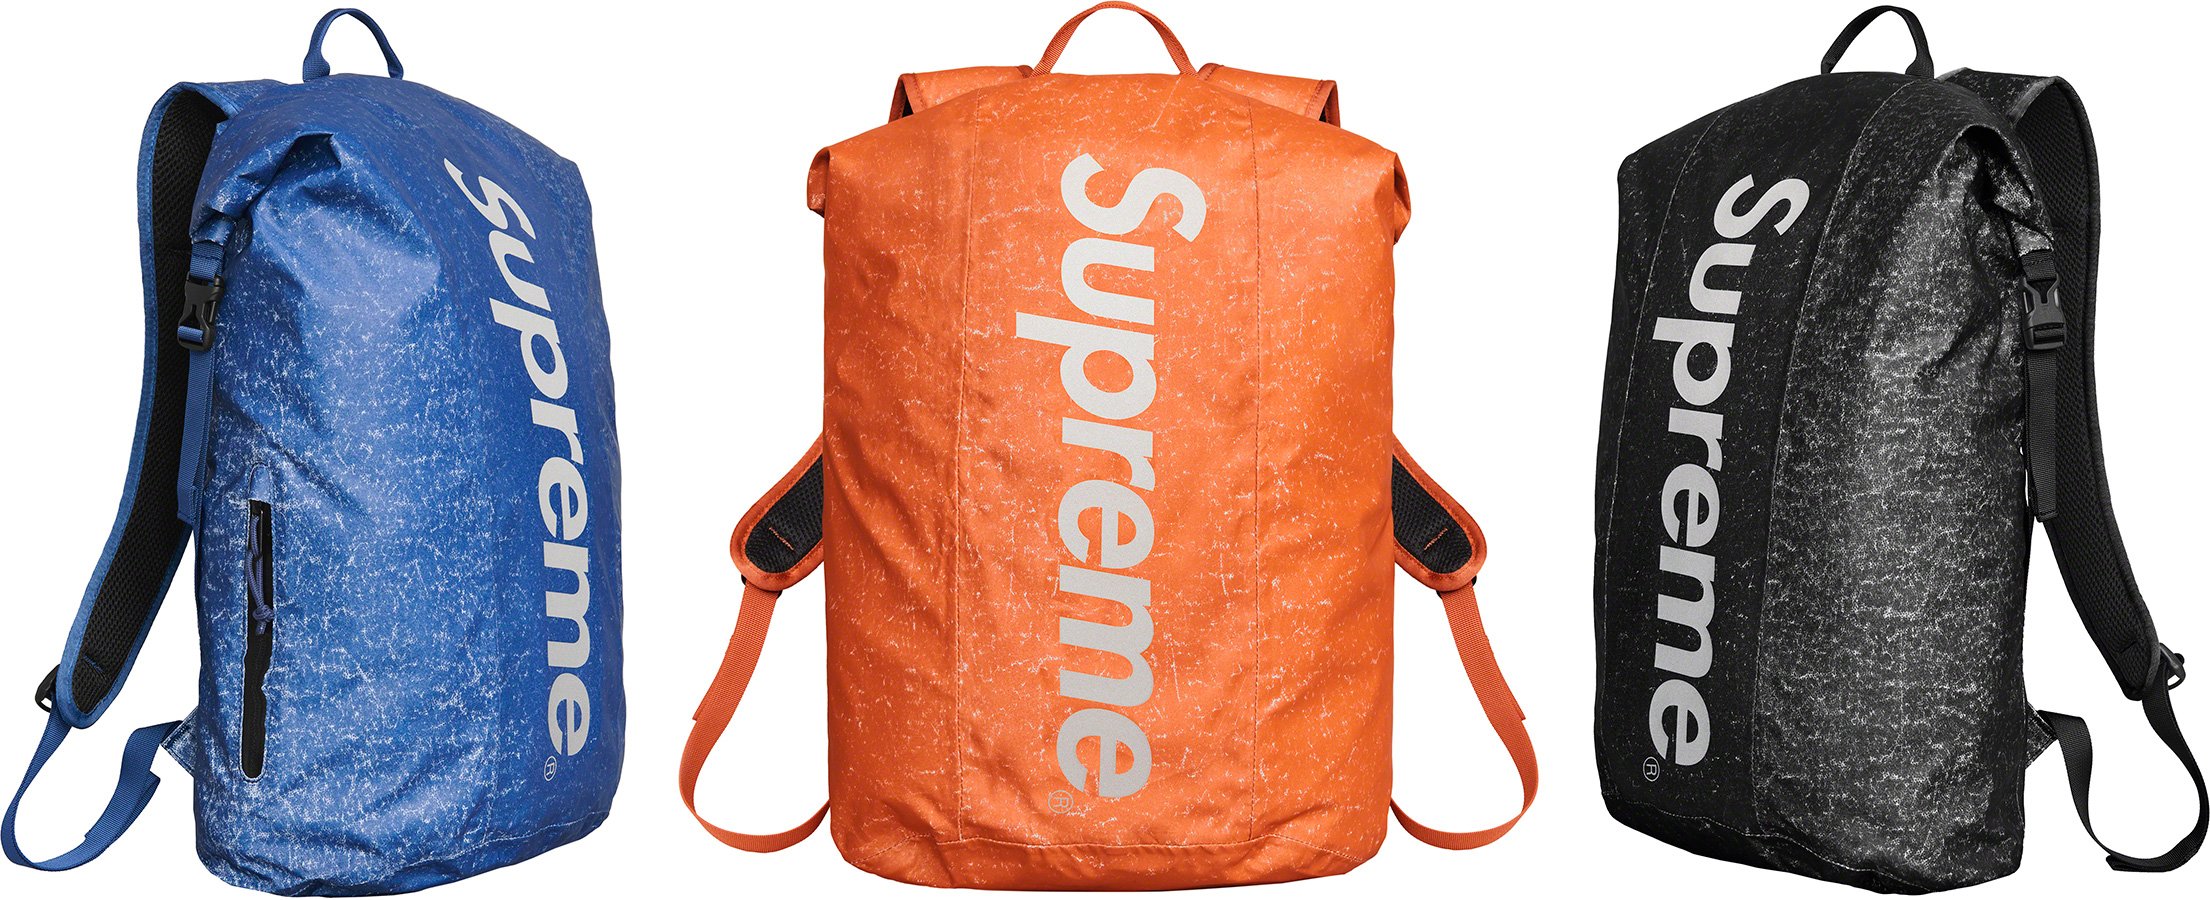 waterproof supreme backpack